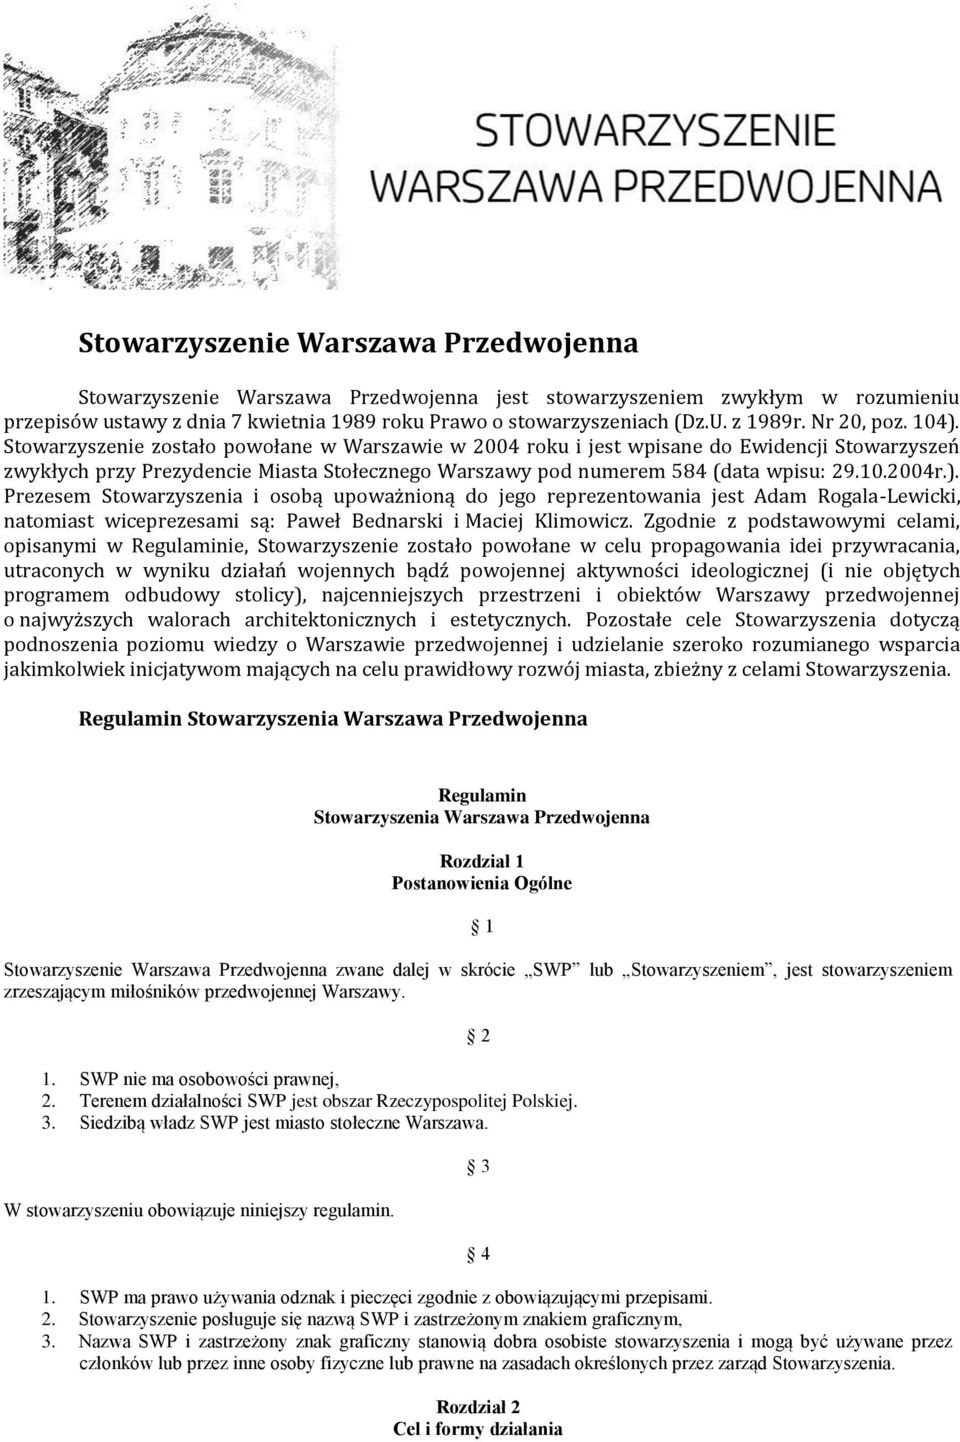 Stowarzyszenie zostało powołane w Warszawie w 2004 roku i jest wpisane do Ewidencji Stowarzyszeń zwykłych przy Prezydencie Miasta Stołecznego Warszawy pod numerem 584 (data wpisu: 29.10.2004r.).